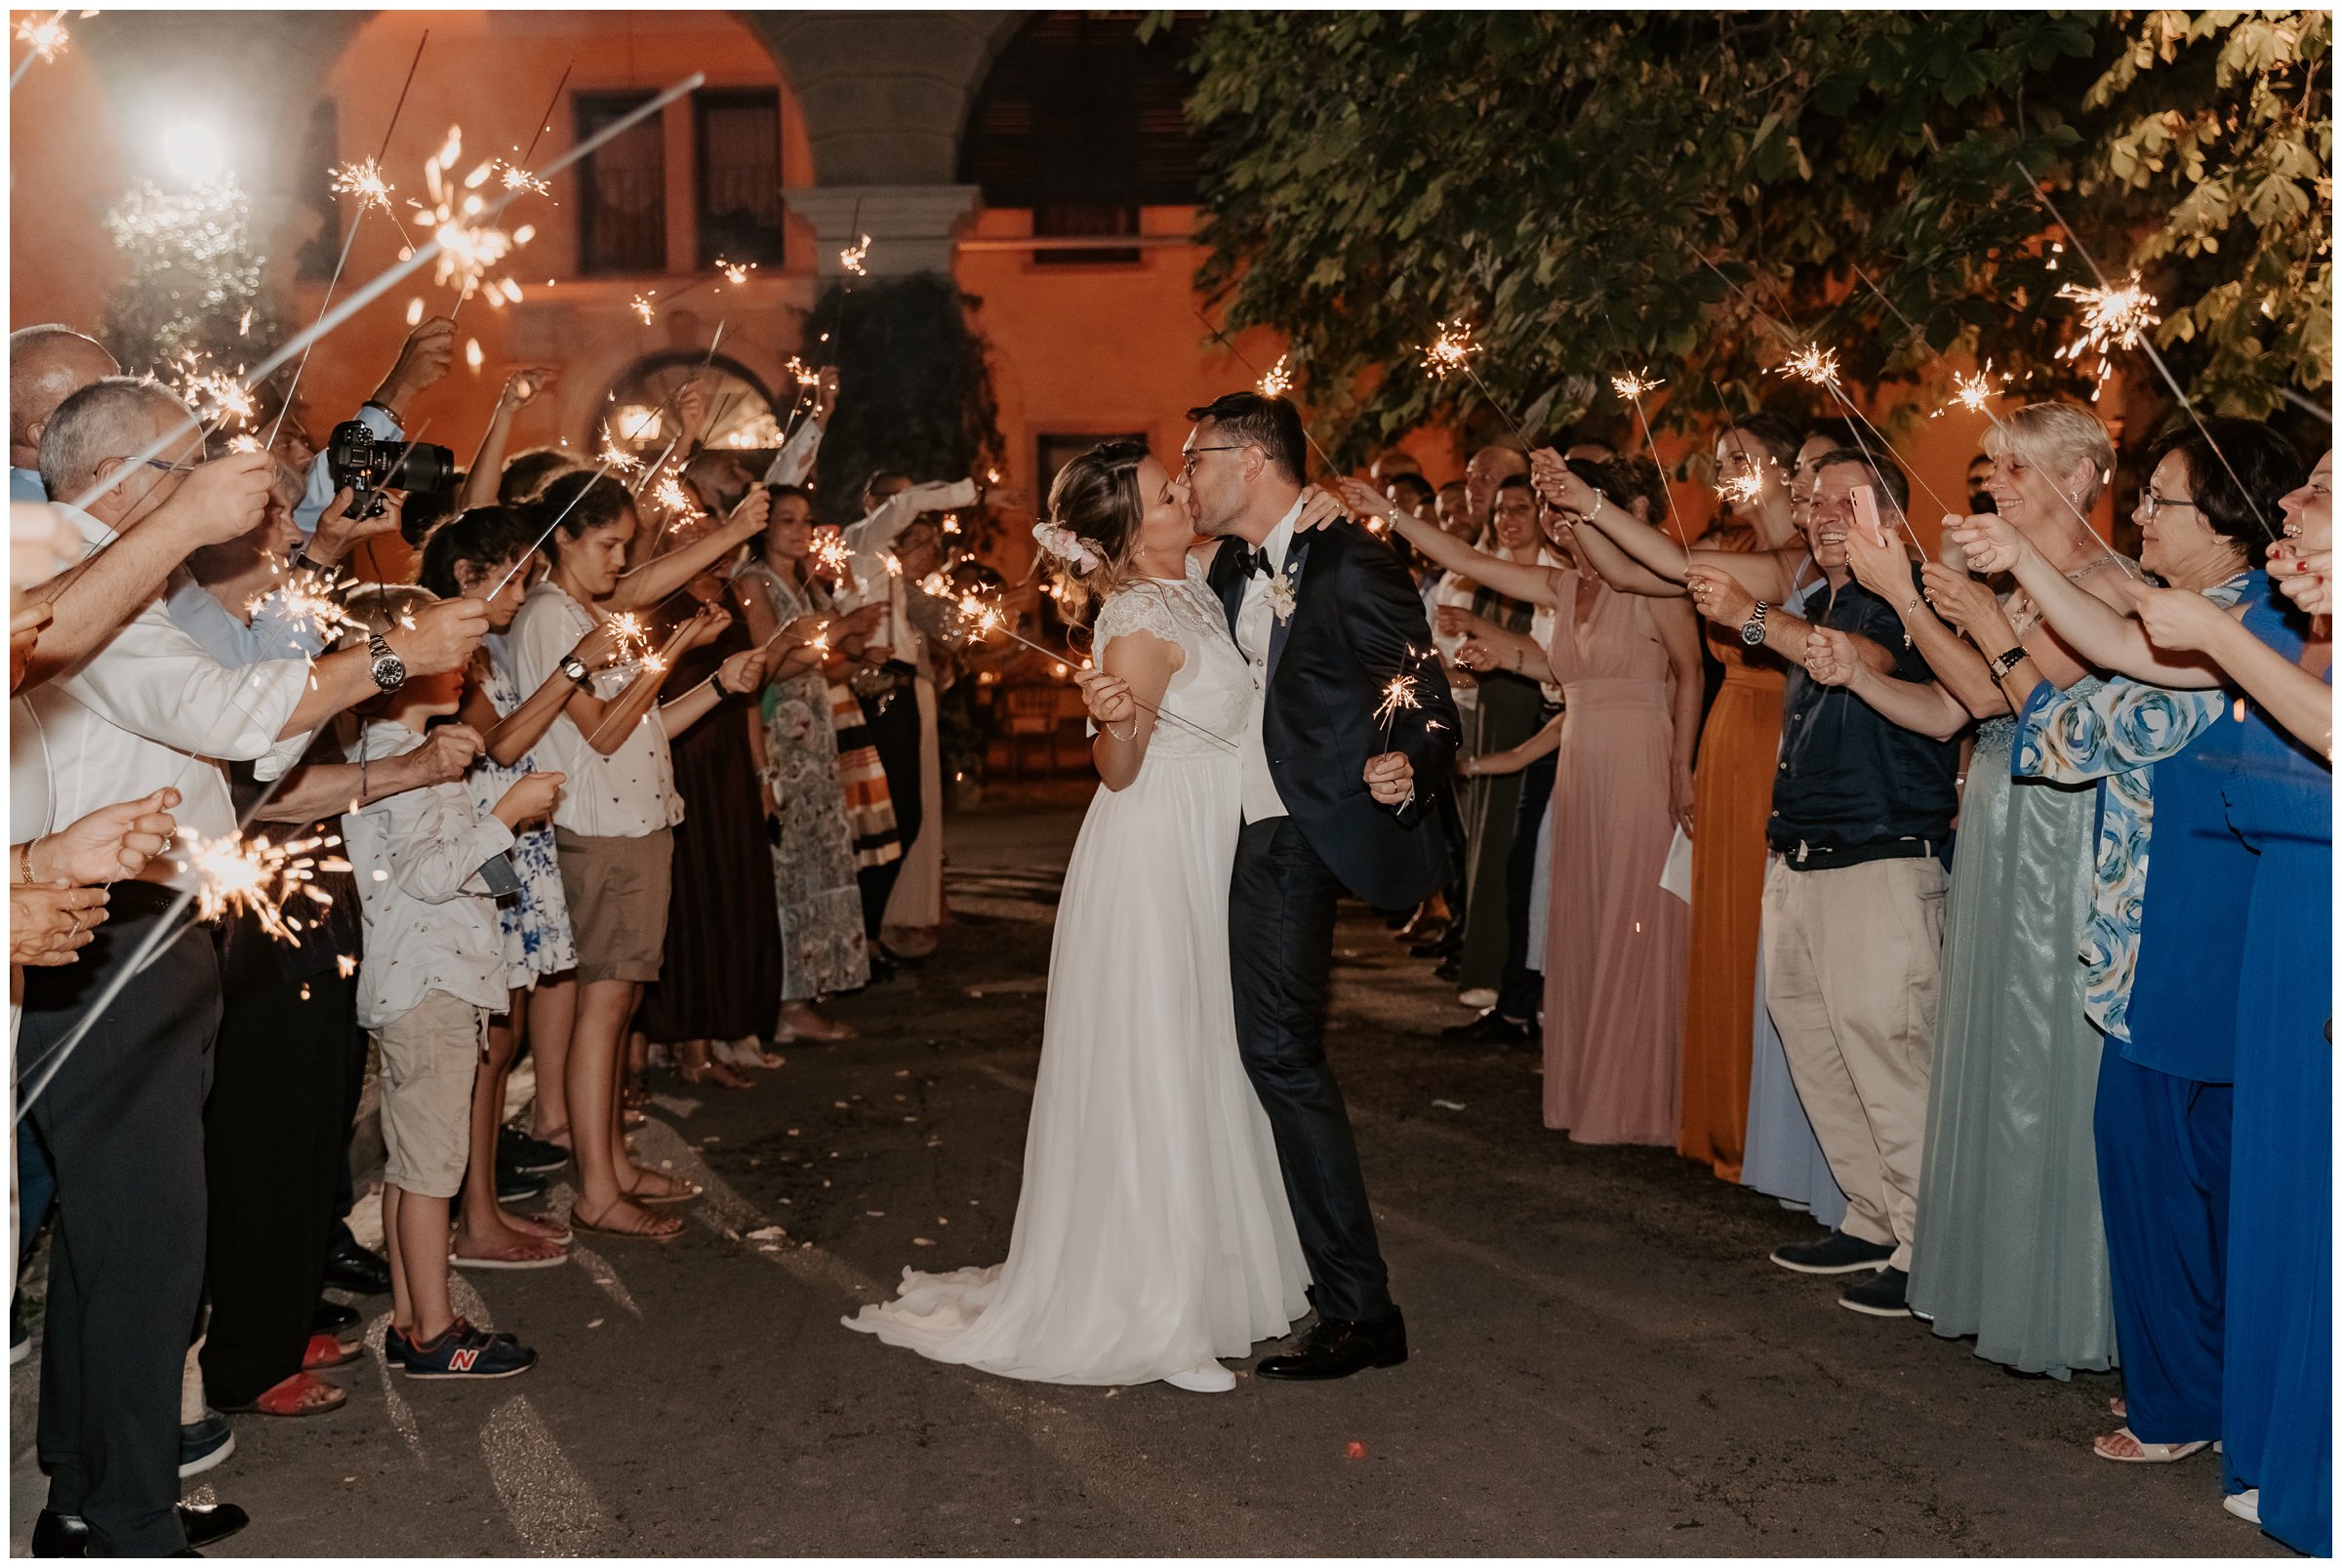 Matrimonio-villa-foscarini-cornaro-fotografo-matrimonio-treviso-fotografo-matrimonio-venezia-55.jpg